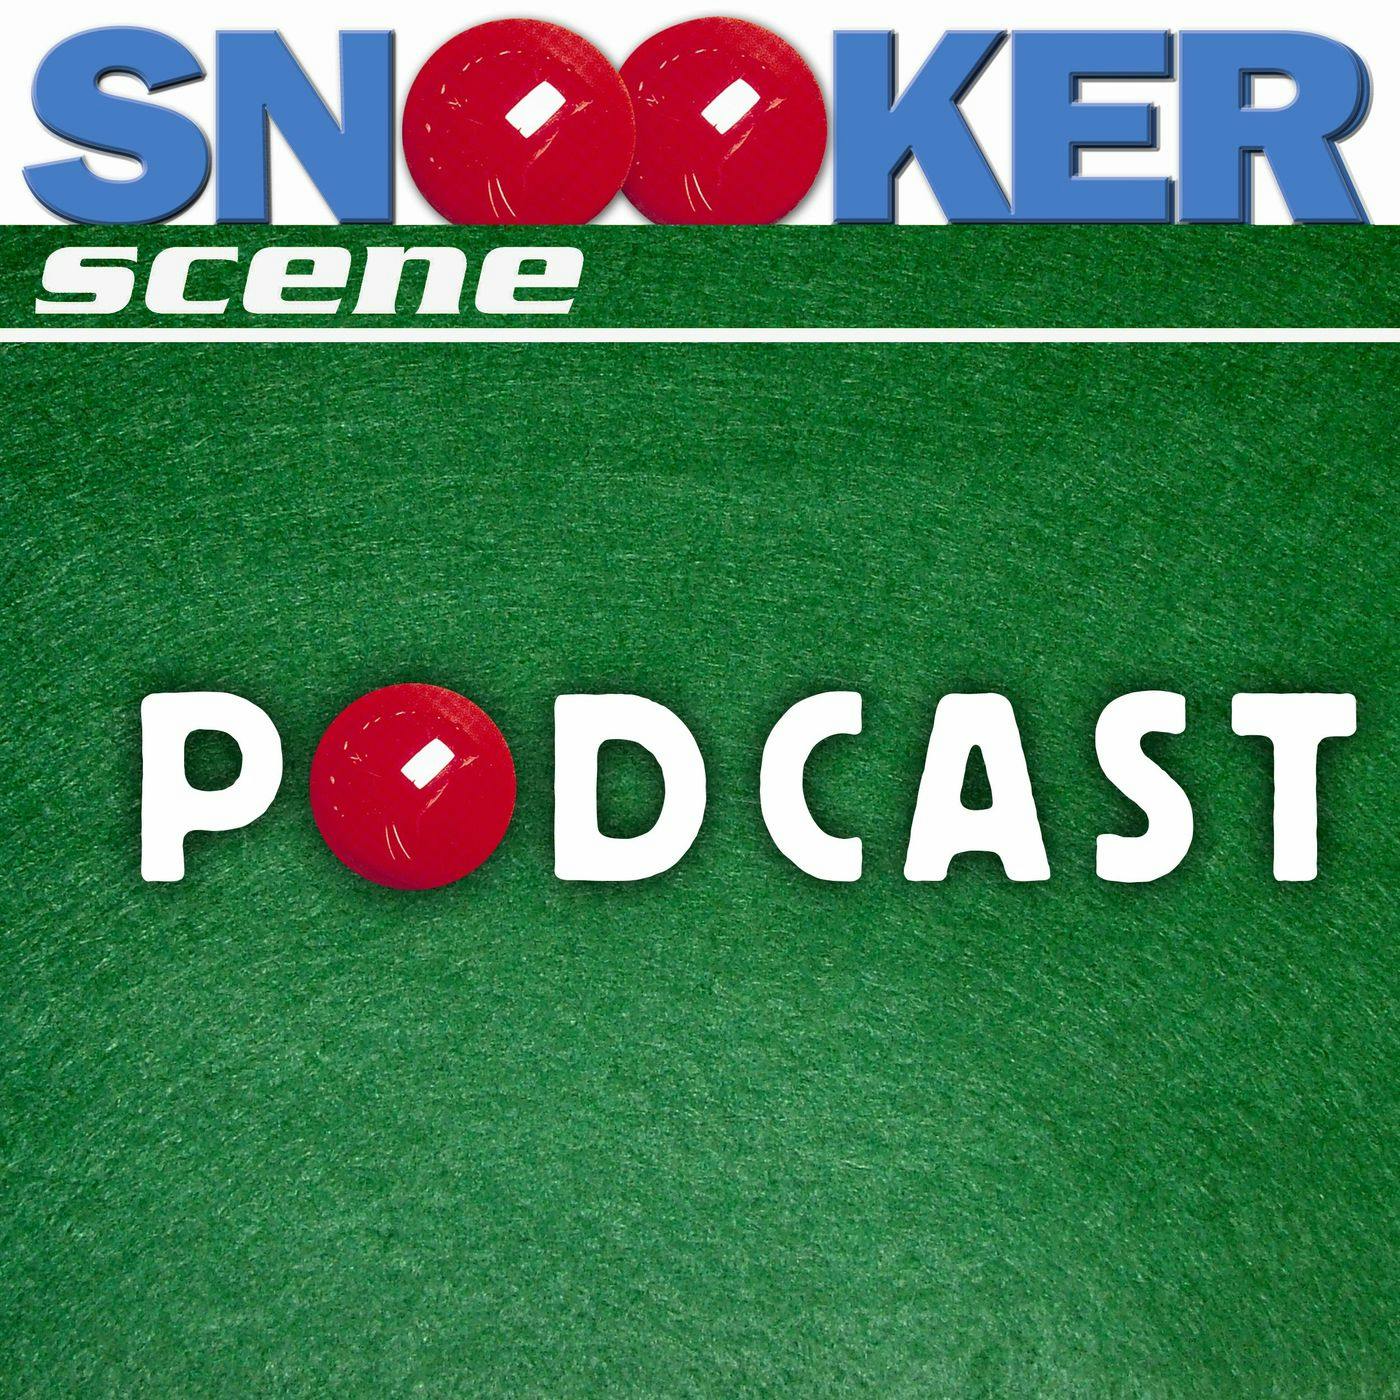 Snooker Scene Podcast episode 36 - Neil Robertson